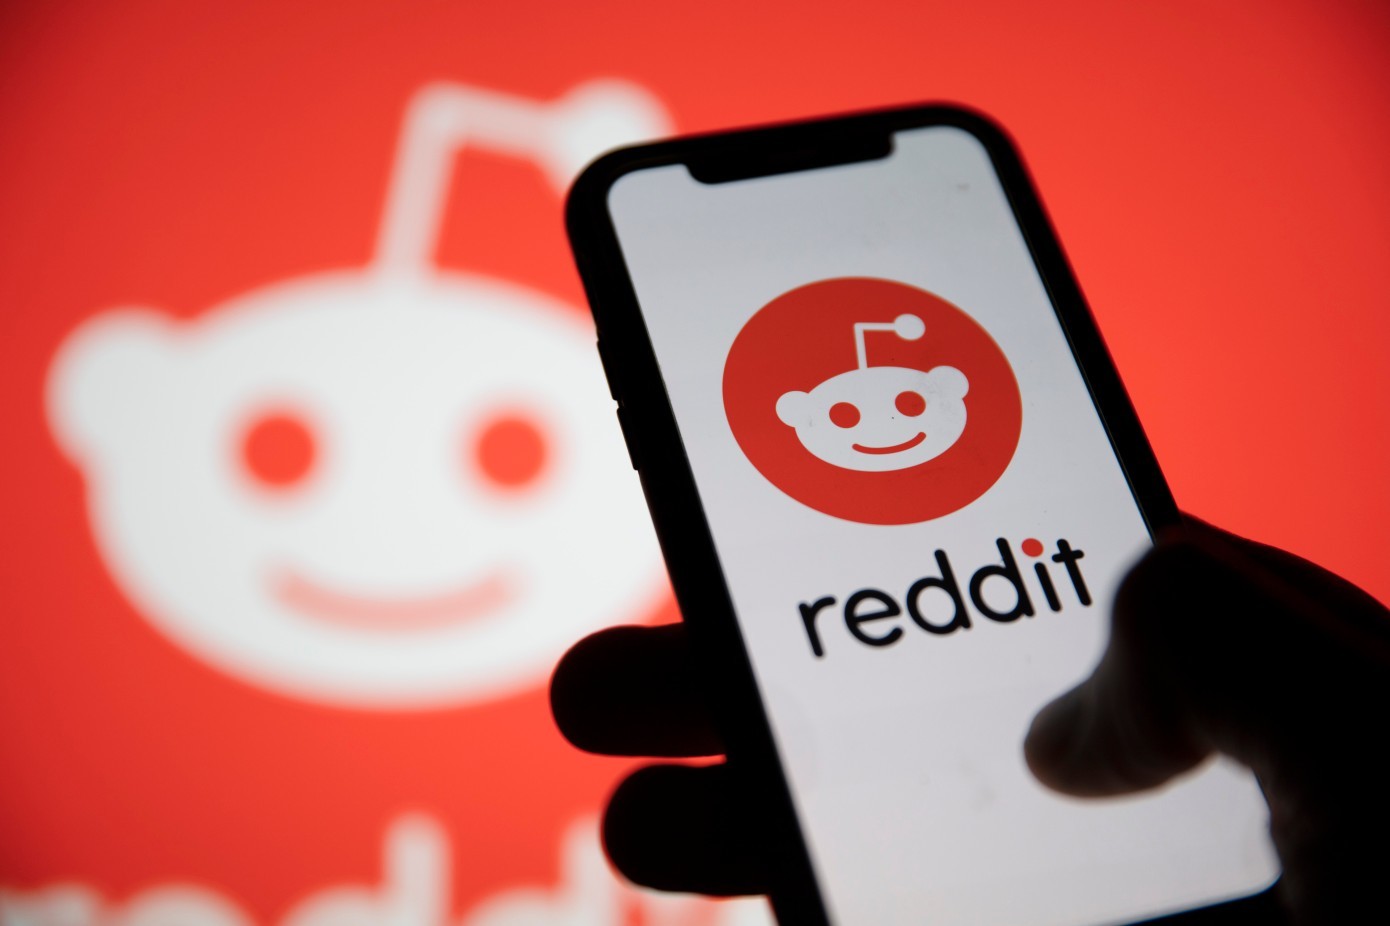 Peste 8.000 de forumuri Reddit şi-au întrerupt activitatea